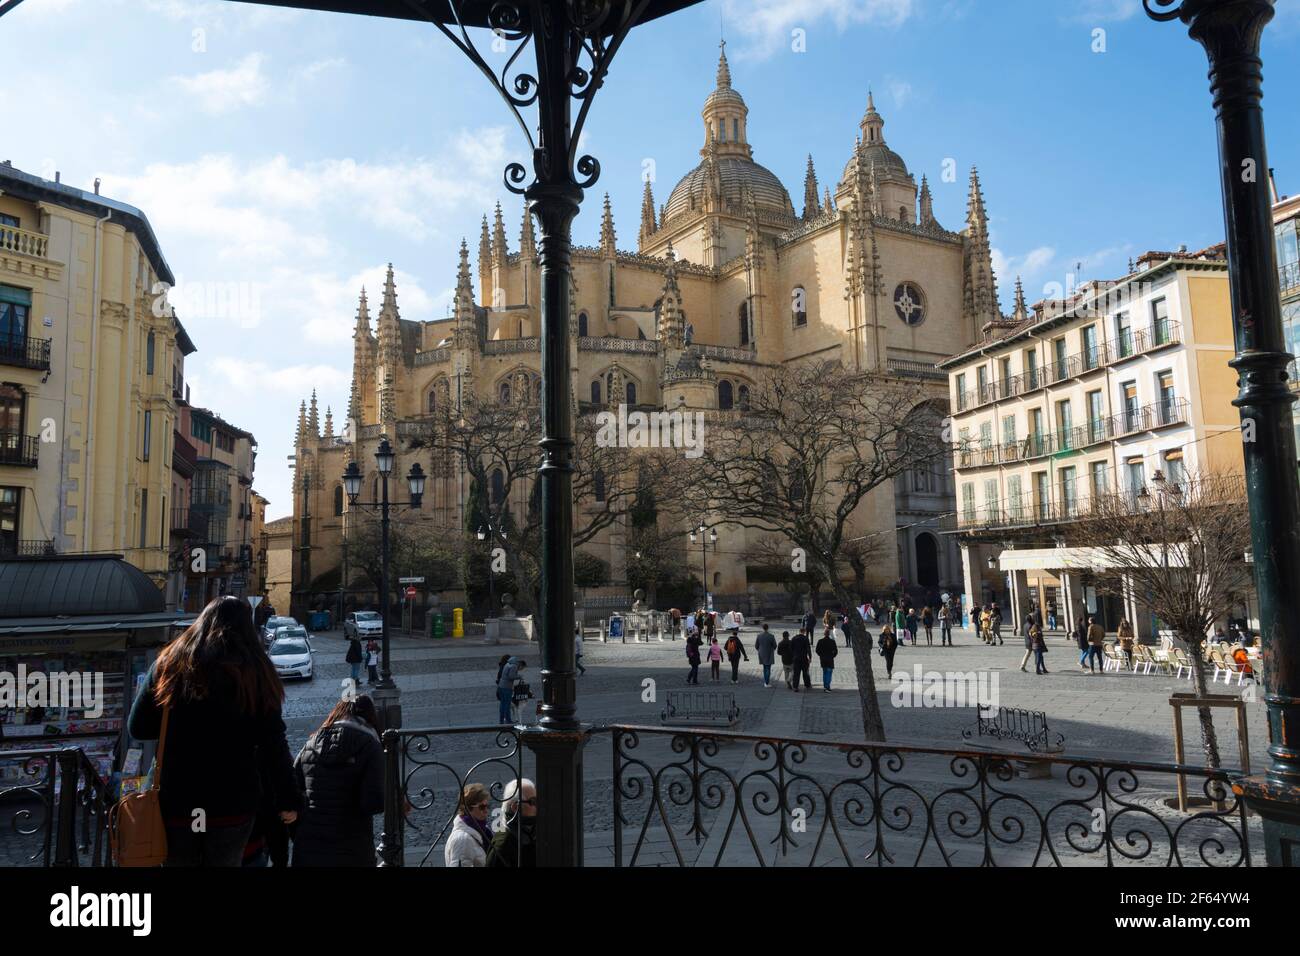 Segovia Cathedral on the Plaza Mayor. Segovia, Spain. Stock Photo